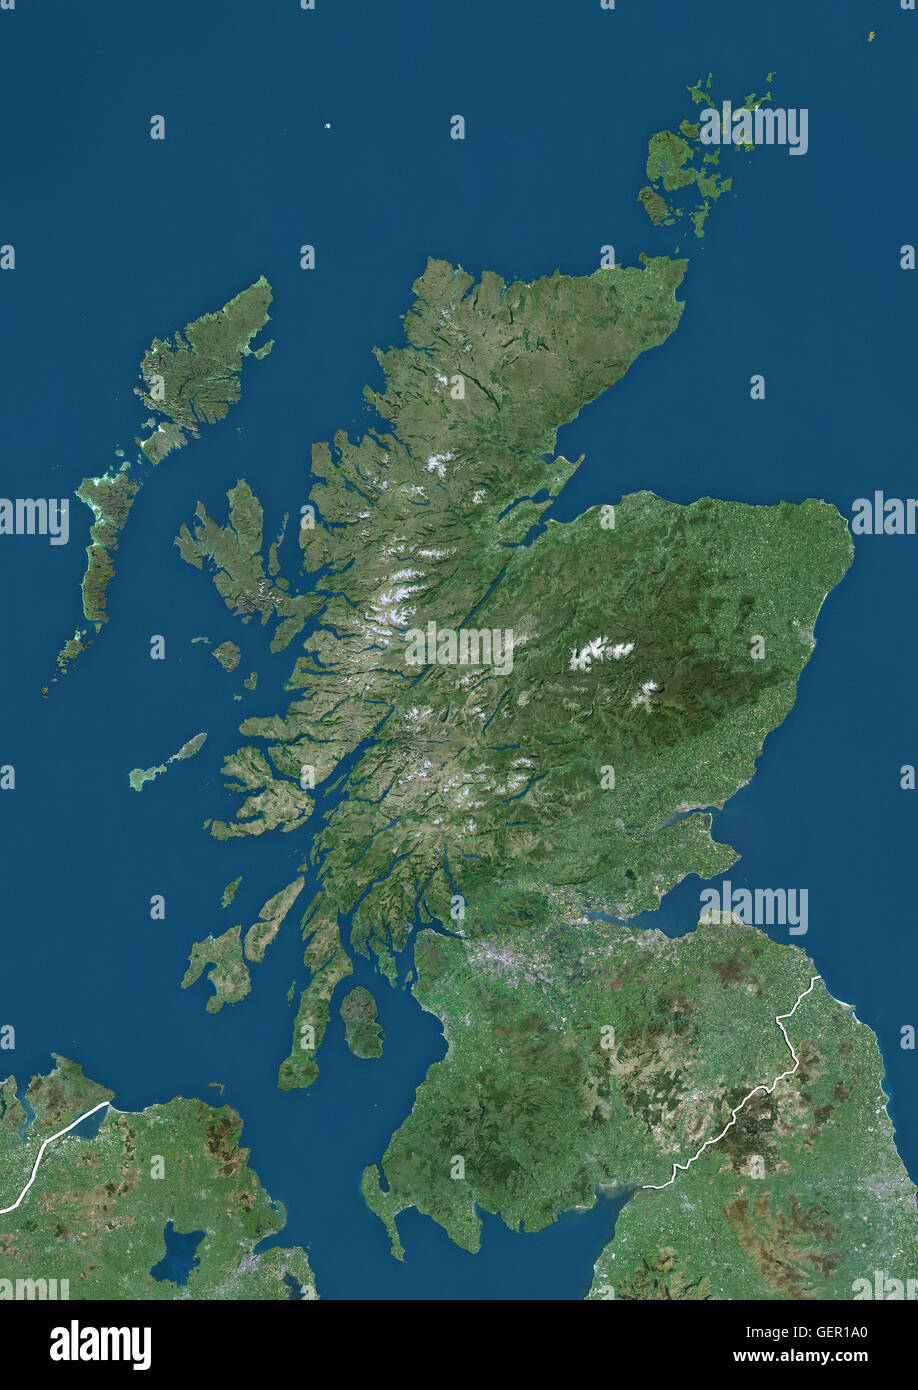 Vista satellitare della Scozia, Regno Unito (con i confini del paese). L'immagine mostra la Scozia continentale, comprese le Ebridi e Orkney Islands. Questa immagine è stata elaborata sulla base dei dati acquisiti dai satelliti Landsat. Foto Stock